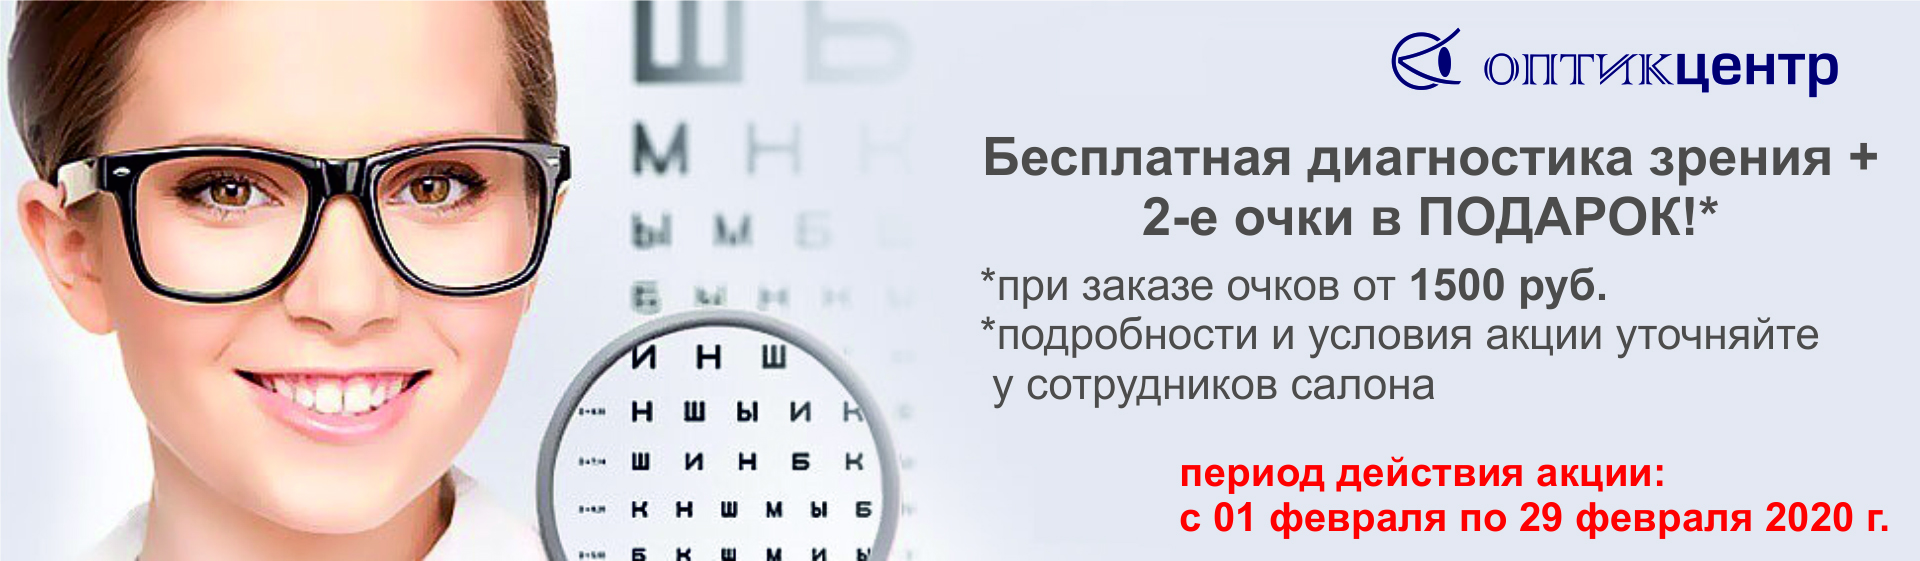 Проверить зрение клиника. Проверка зрения реклама. Очки для зрения баннер. Реклама очков для зрения. Очки офтальмолога.